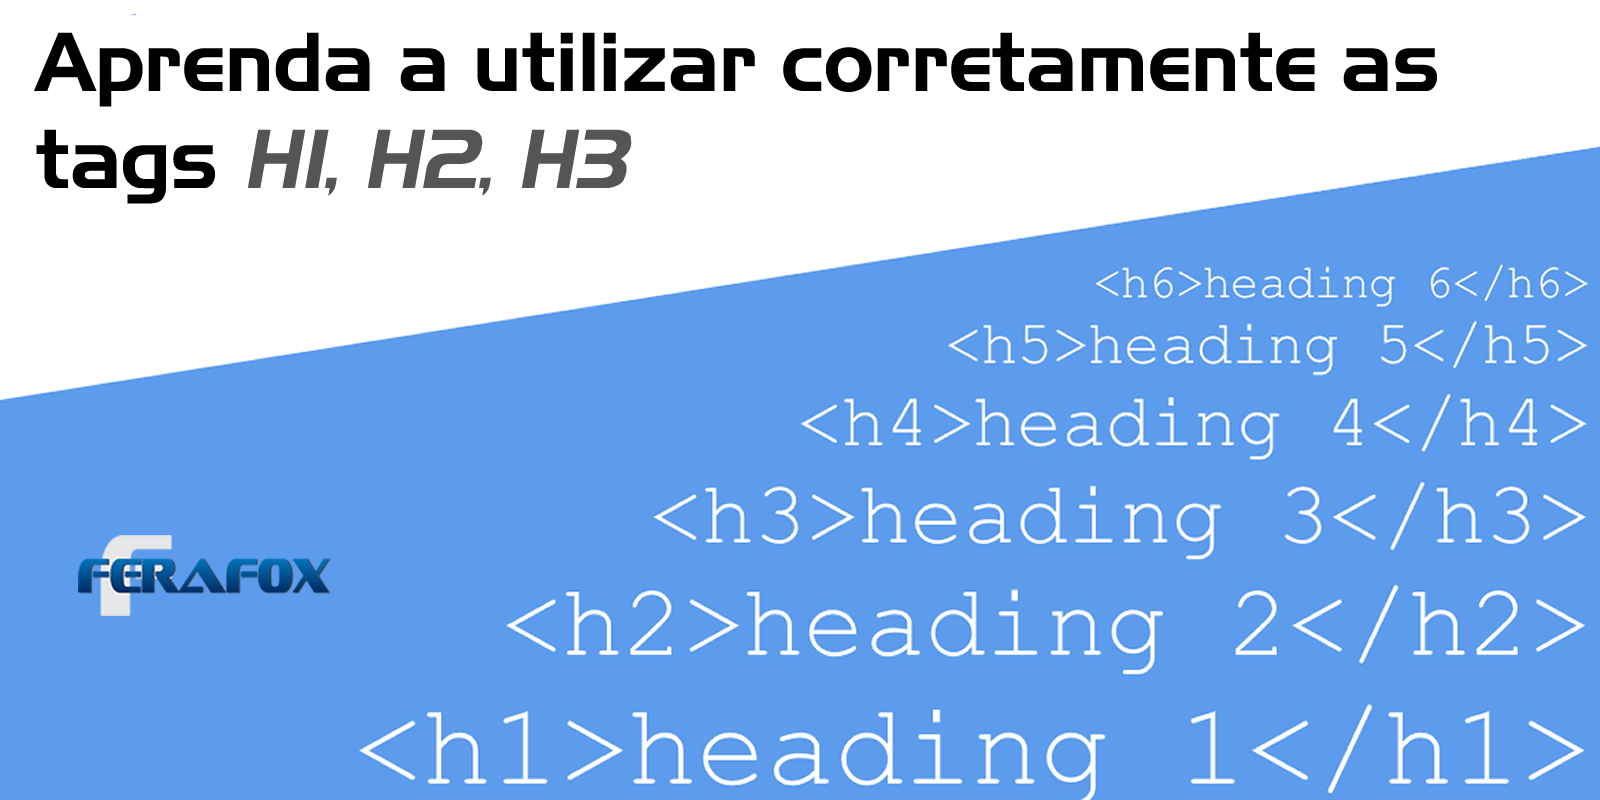 Aprenda a utilizar corretamente as tags de Headings H1, H2, H3 em seu site